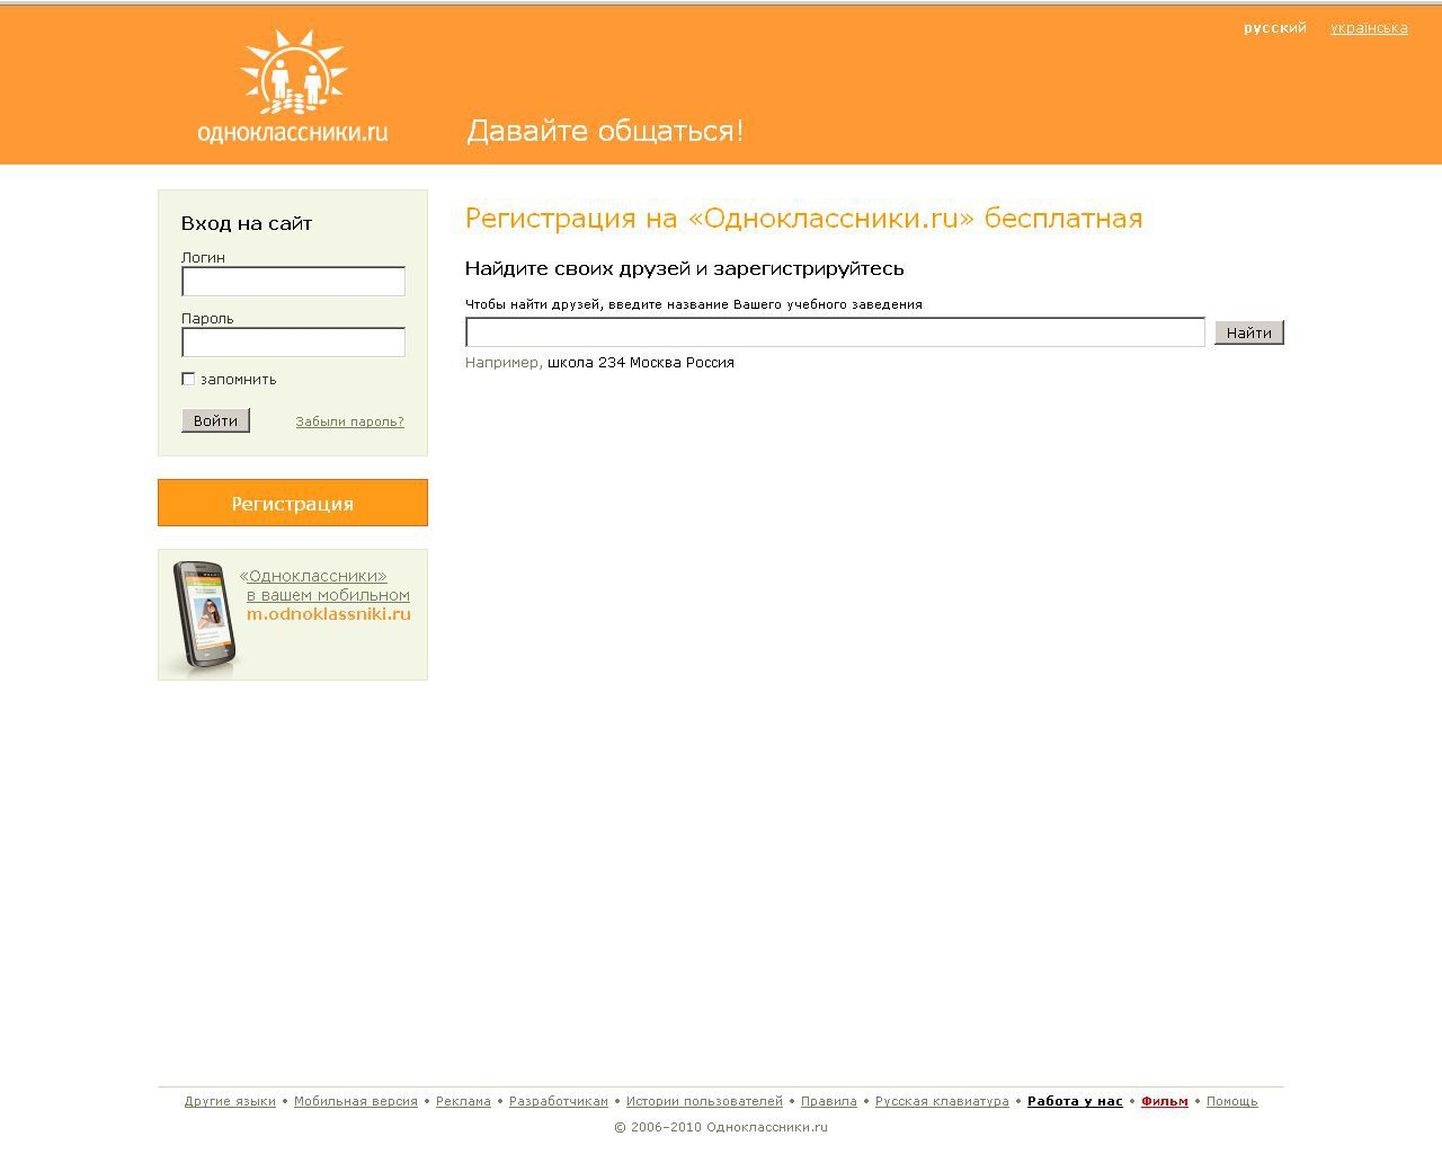 Скриншот главной страницы социальной сети «Одноклассники».